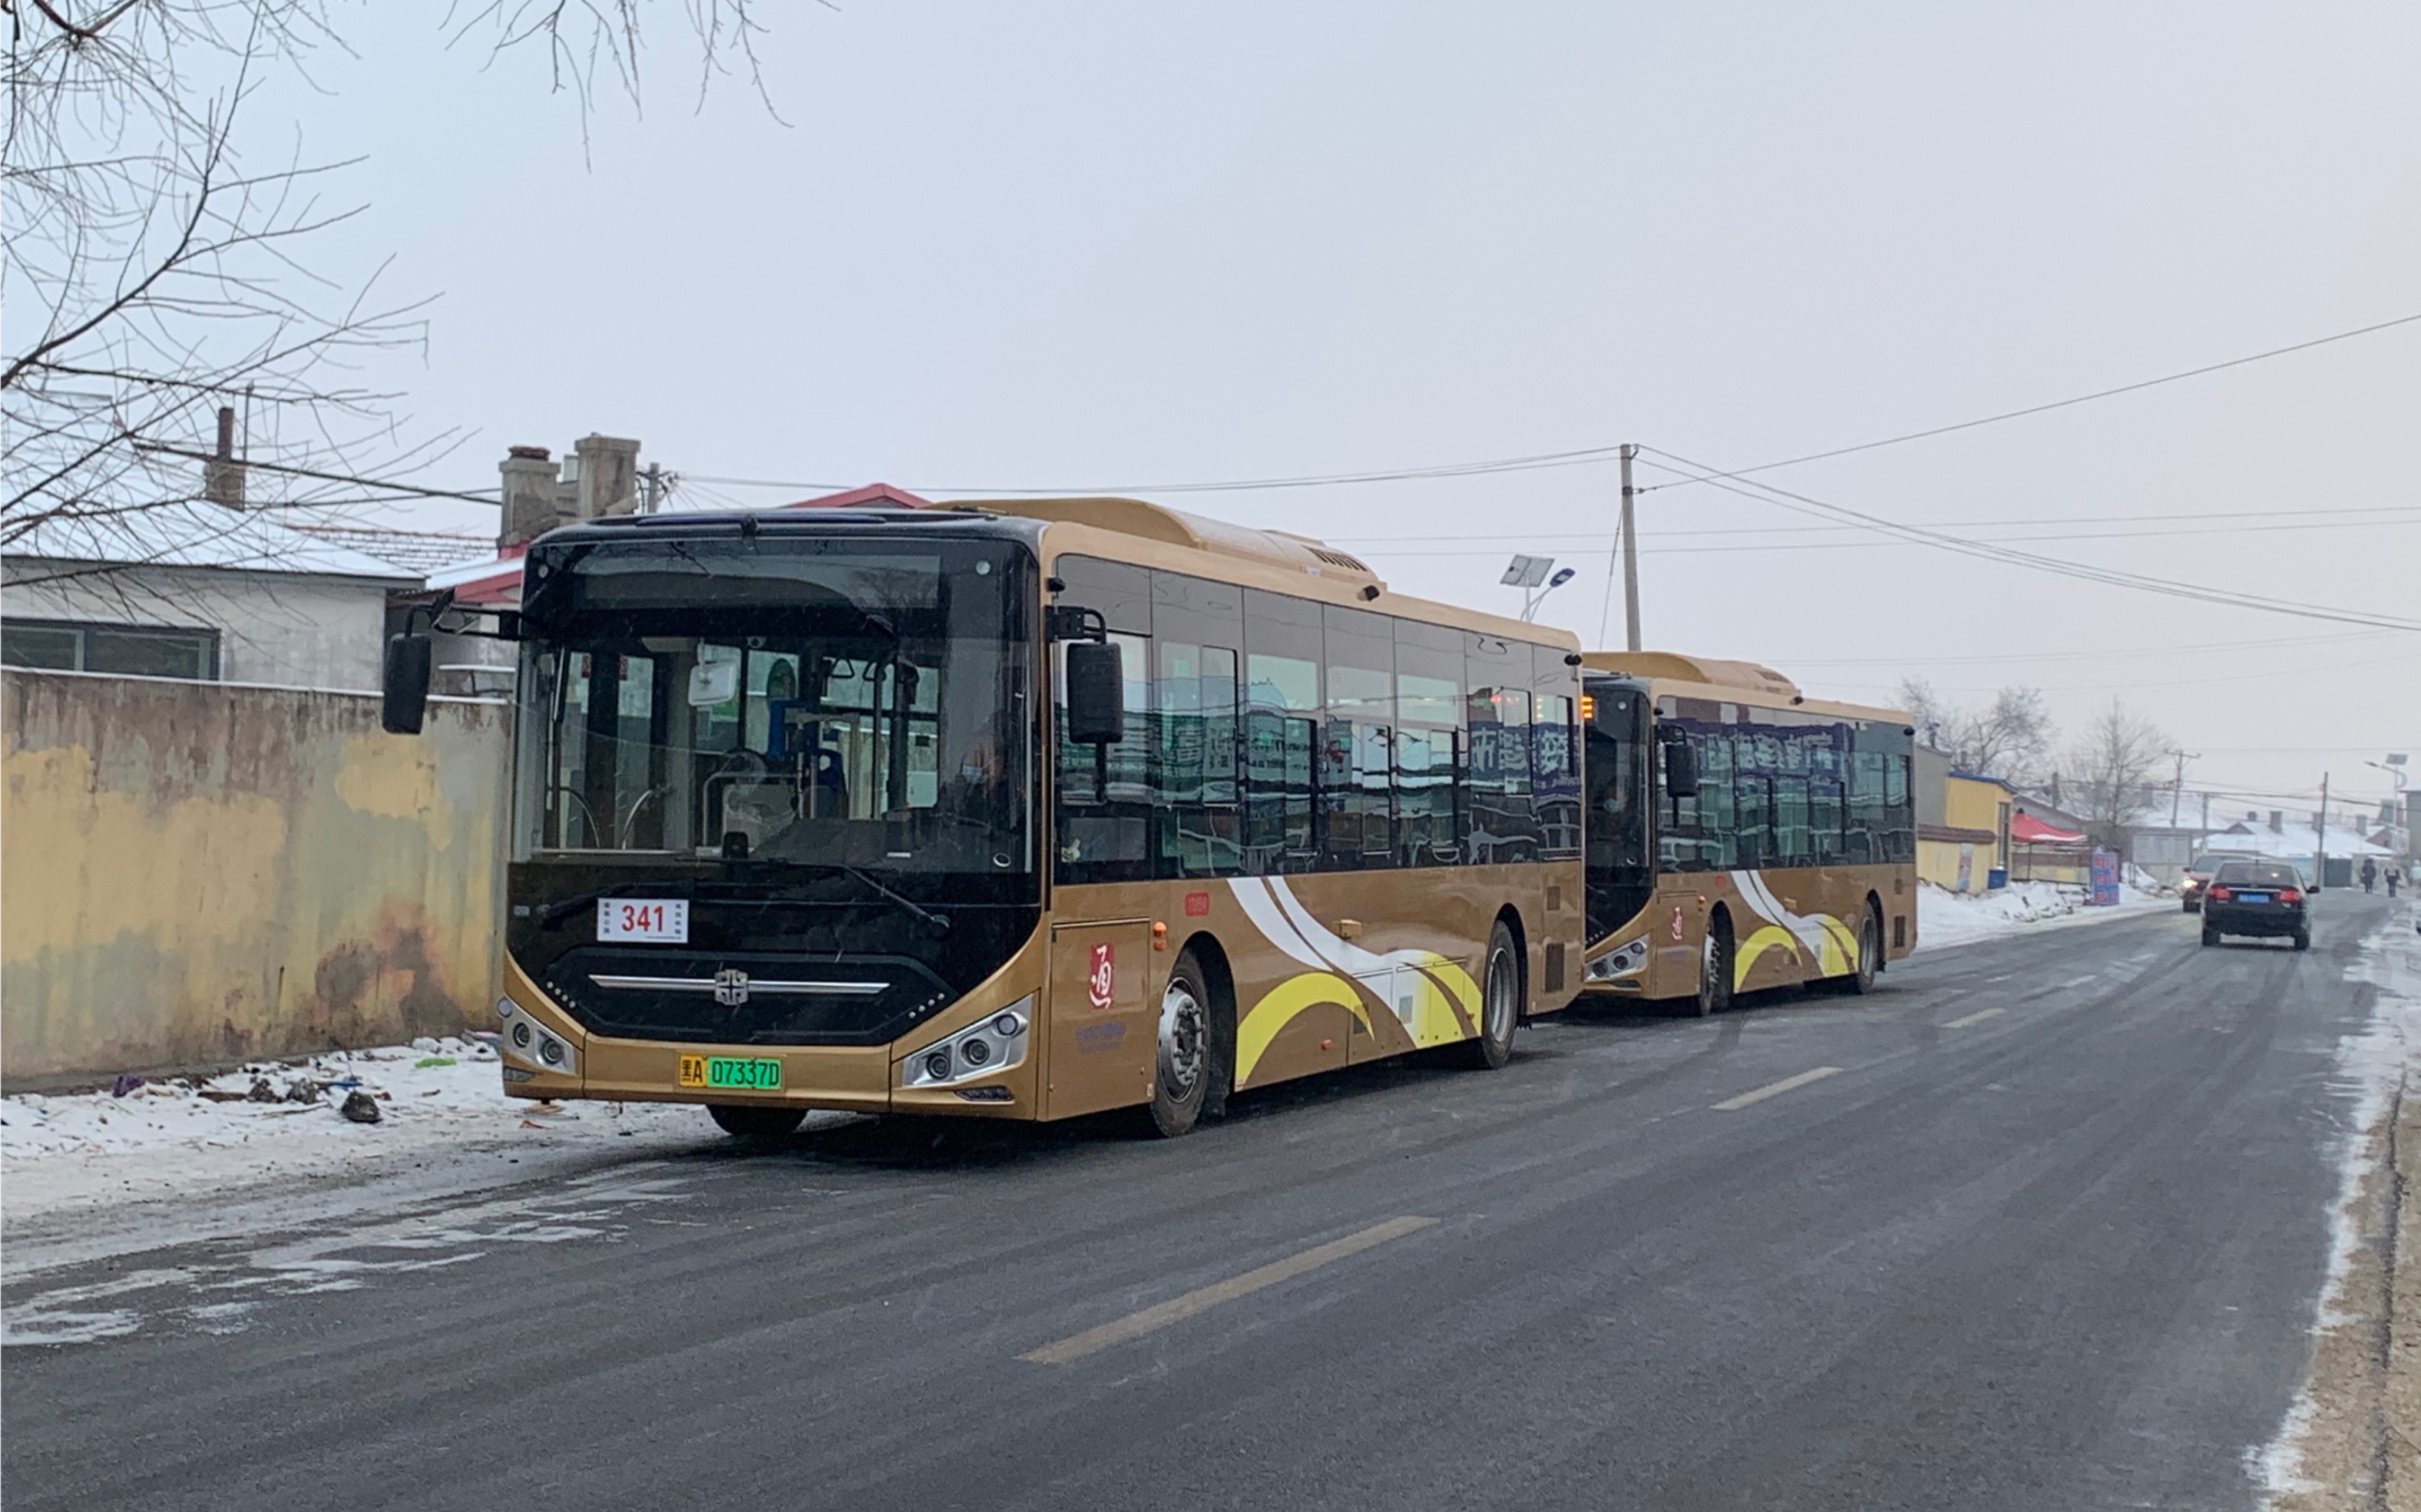 哈尔滨建国公园公交车图片